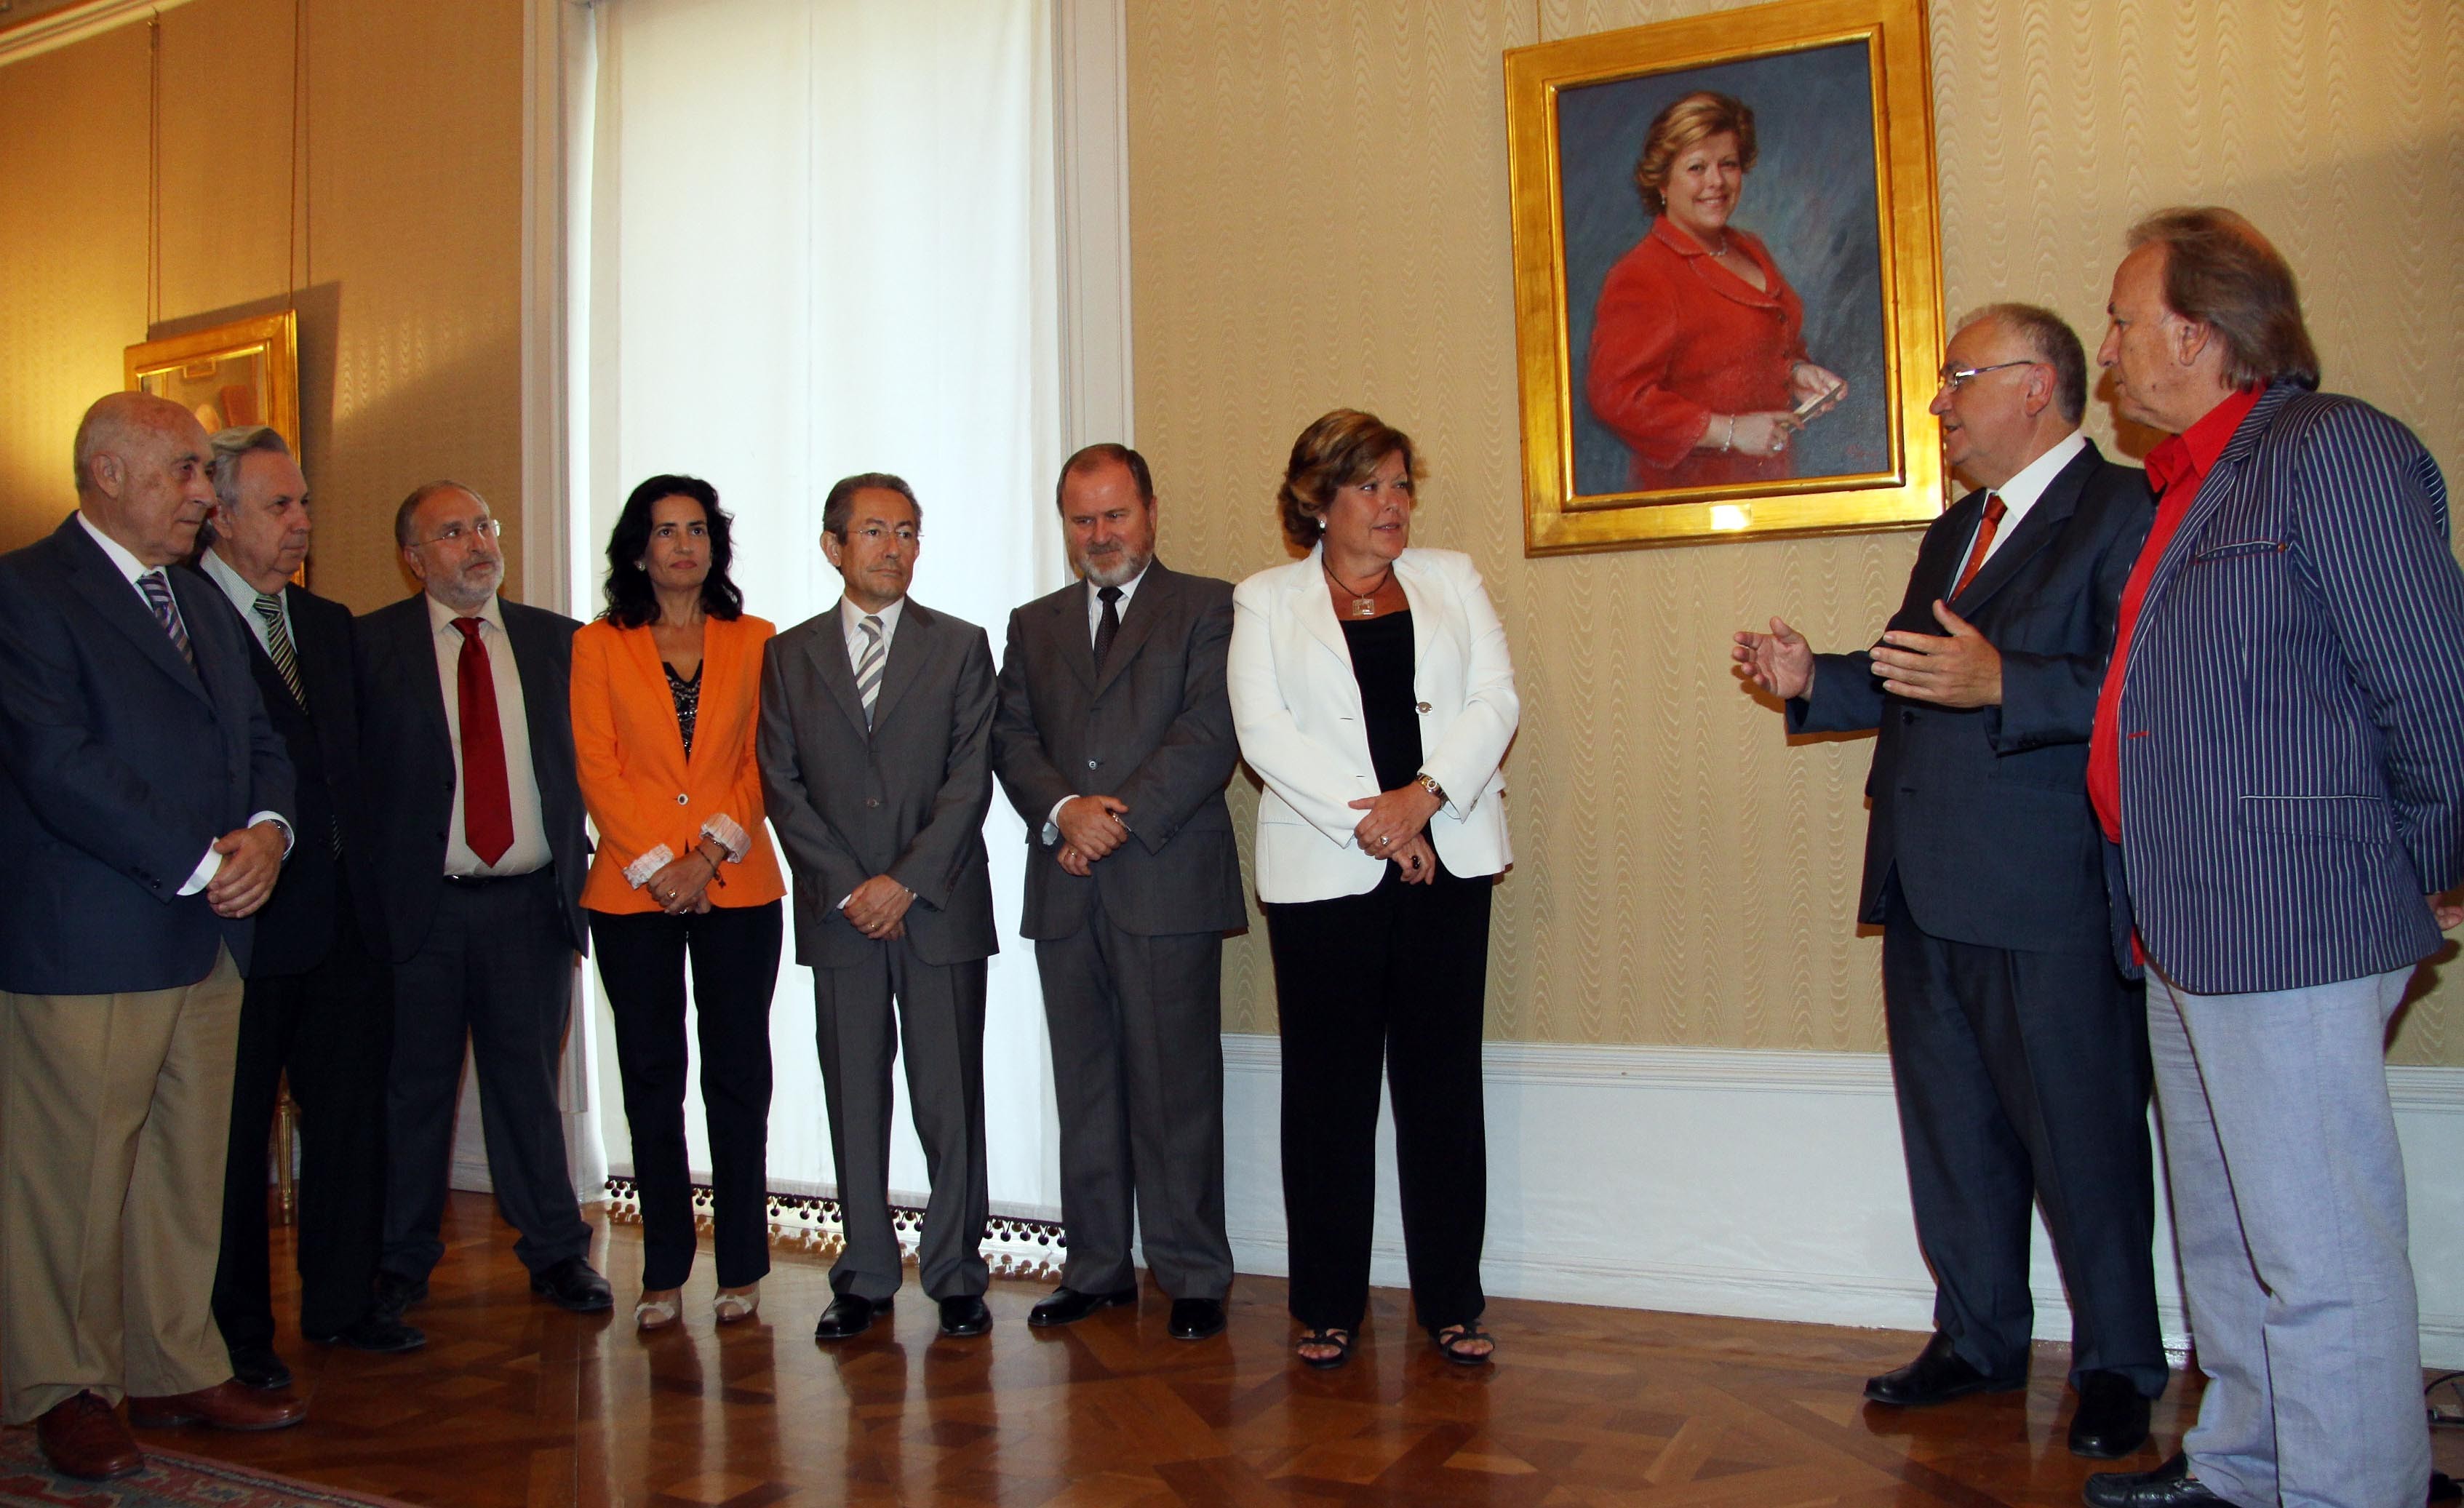 El síndic de Greuges assisteix a la col·locació d’un retrat de la presidenta de les Corts durant la VII legislatura, Milagrosa Martínez